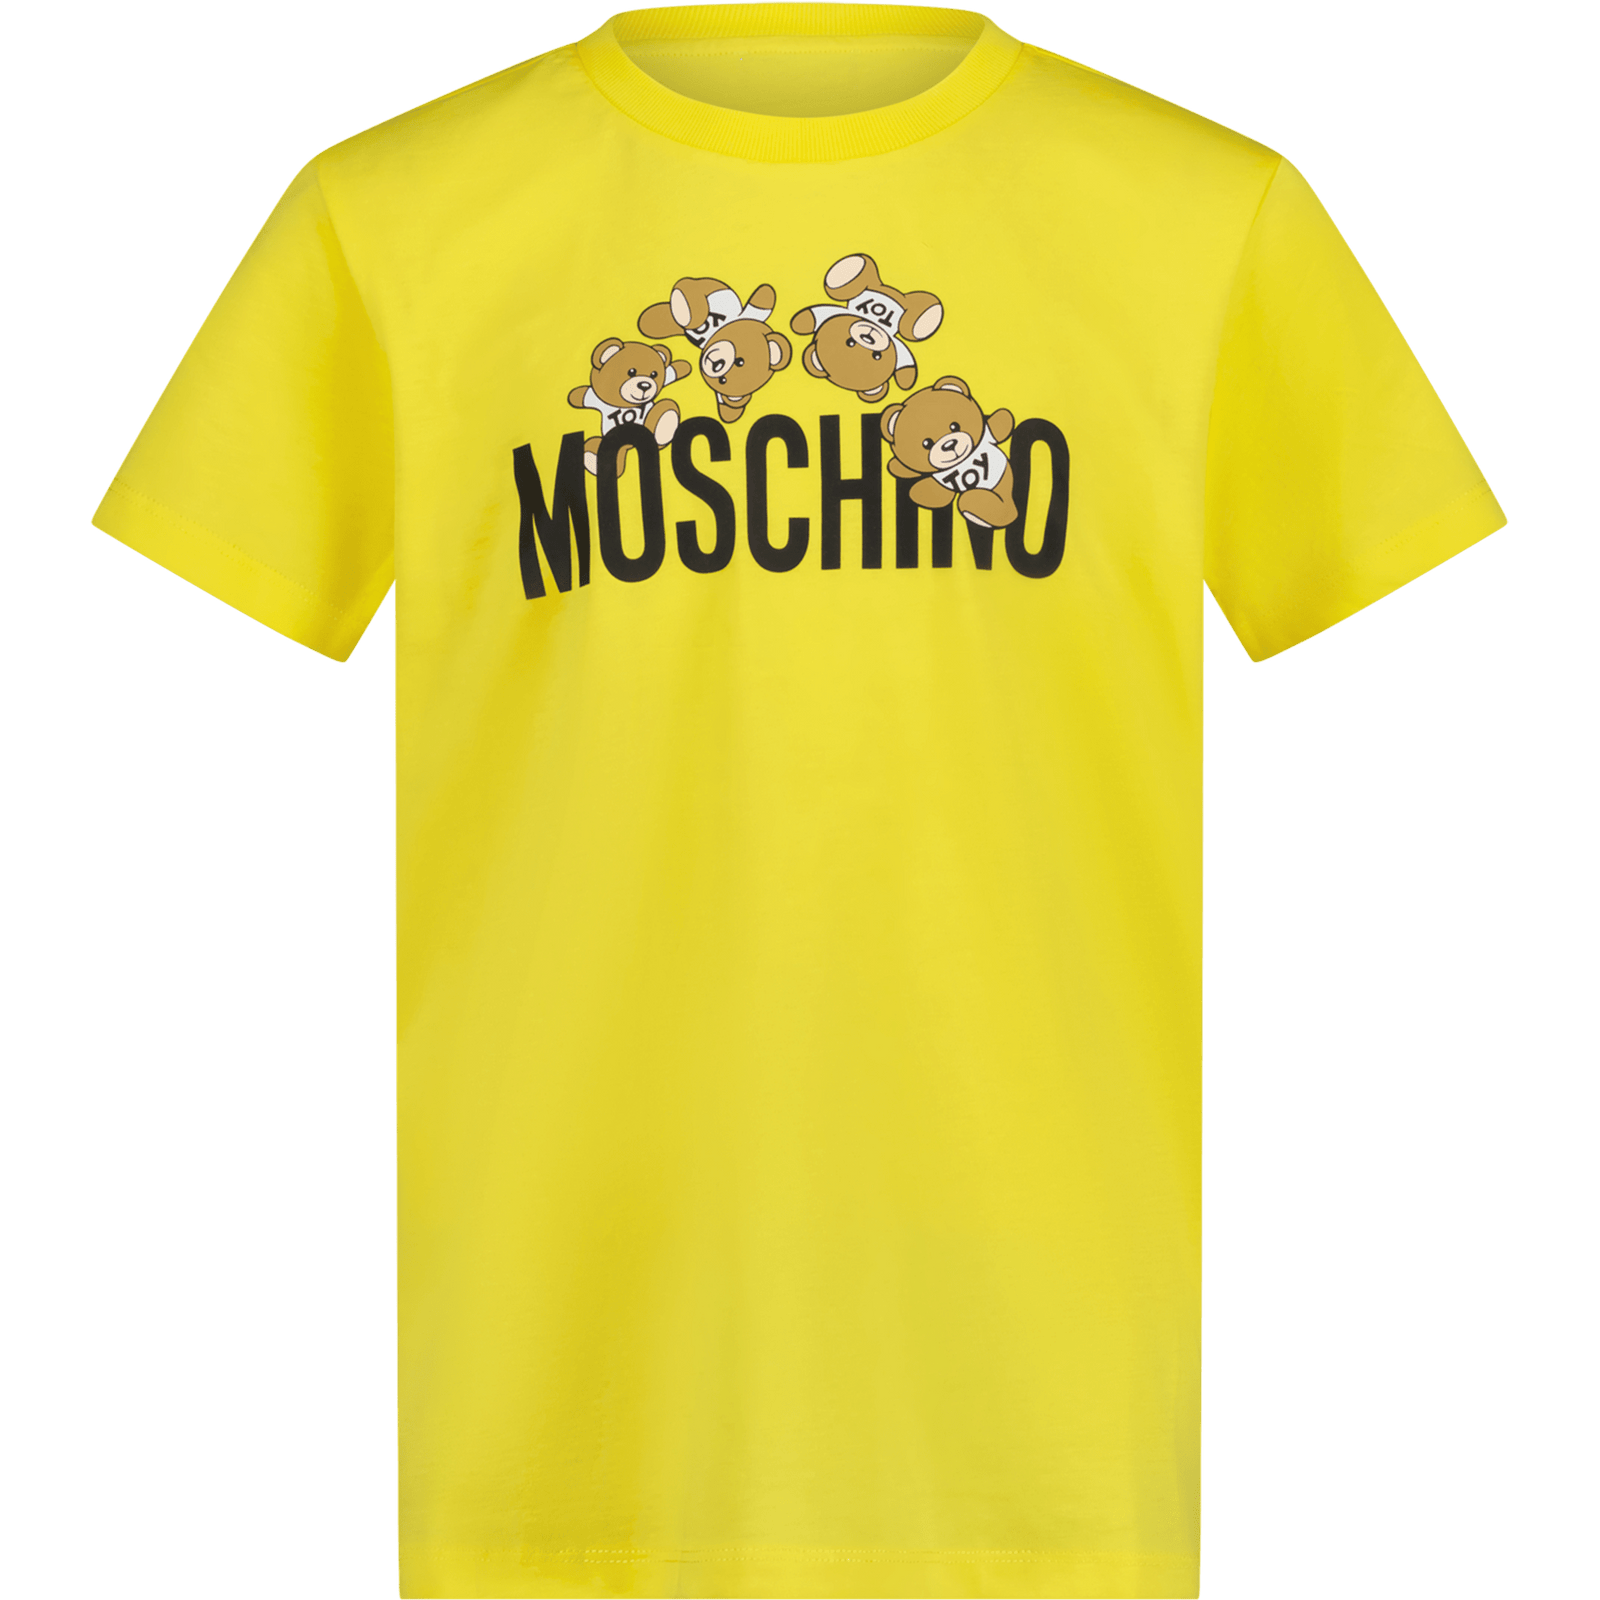 Moschino Kinder Unisex T-Shirt Geel